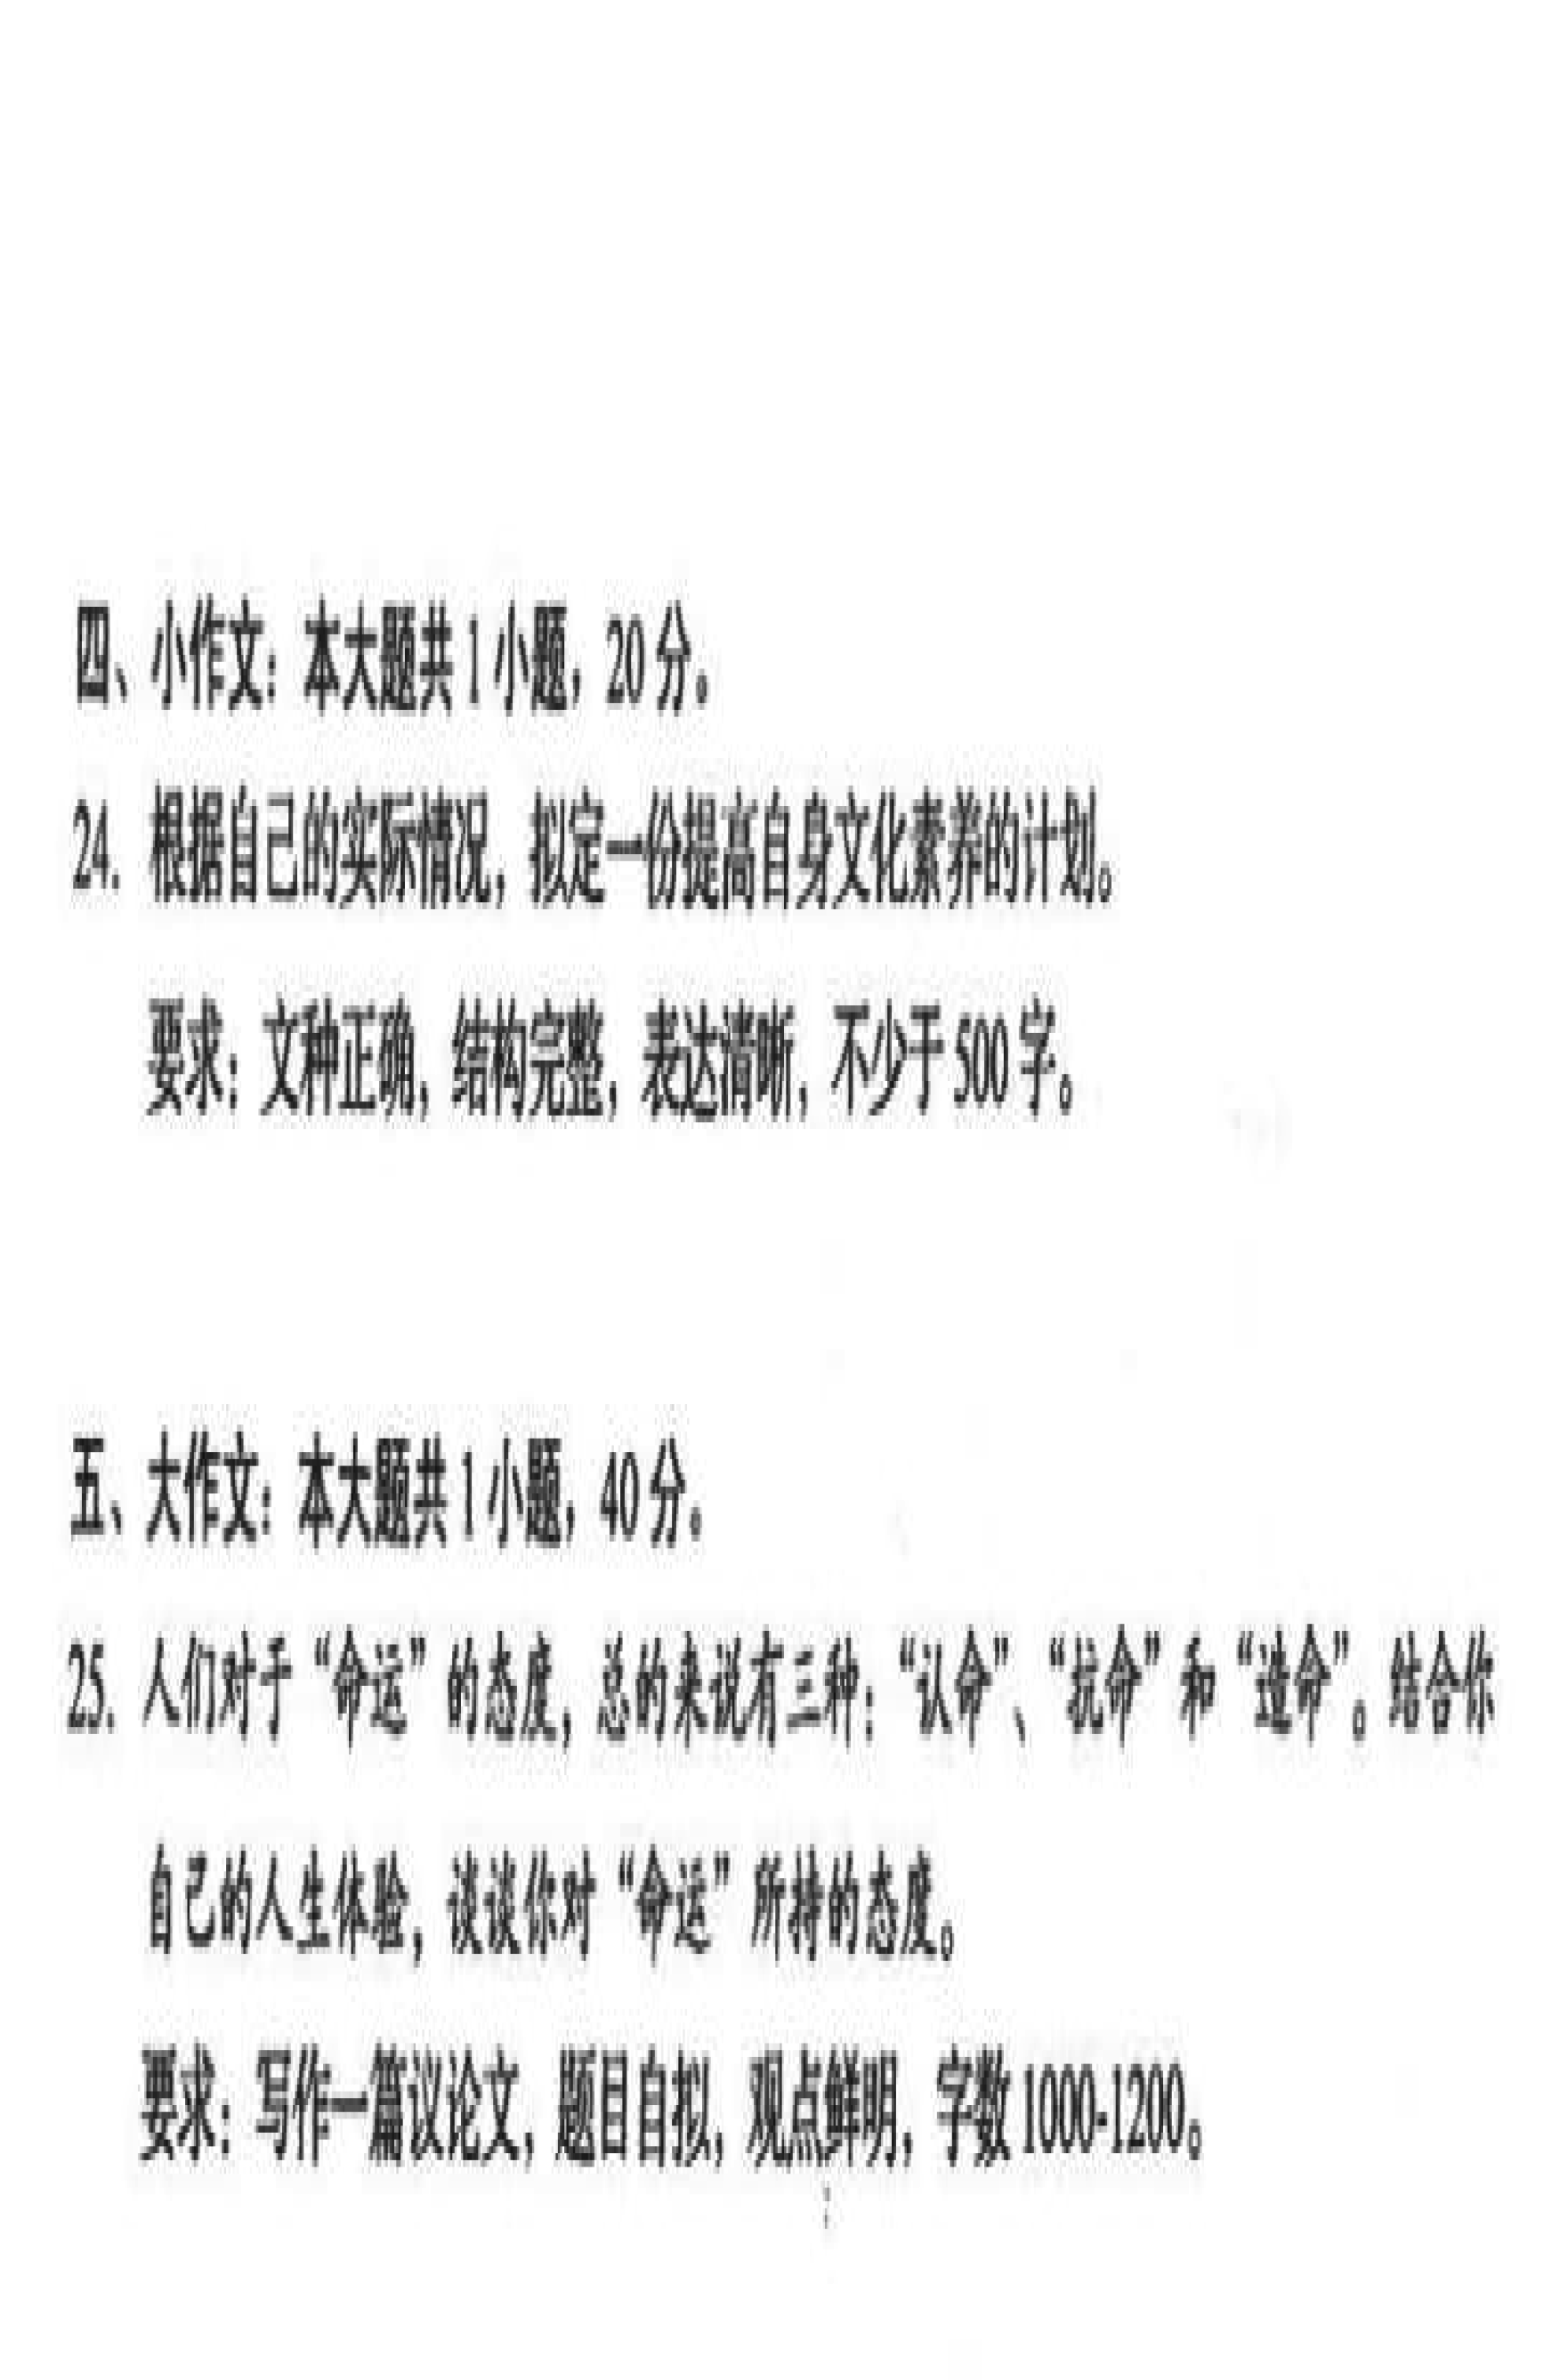 2021年10月贵州省自学考试00506写作（一）真题及答案